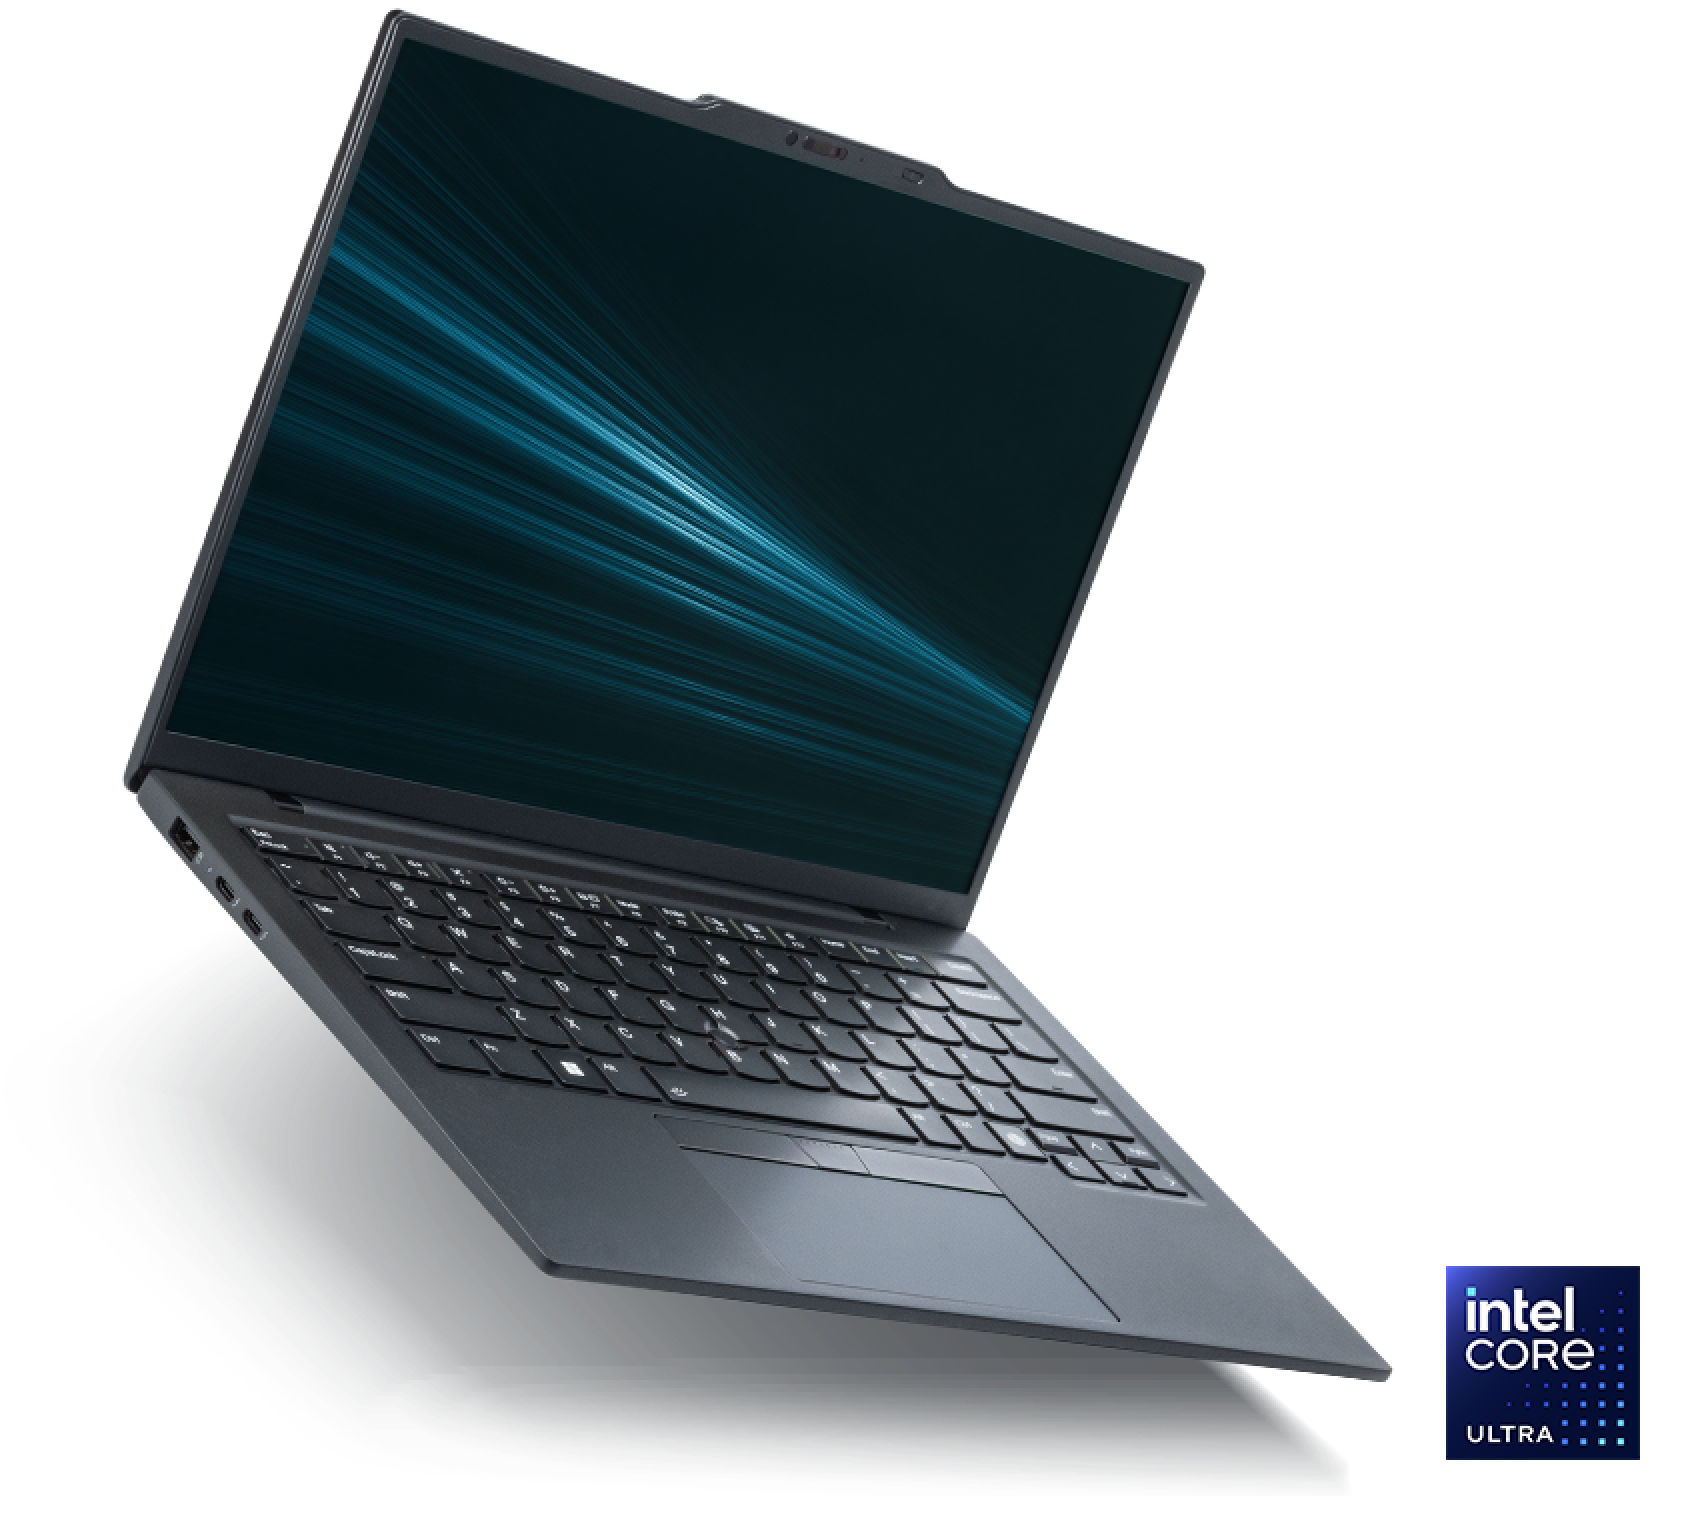 Der Intel Evo Edition Laptop mit einem Intel Core Ultra Prozessor